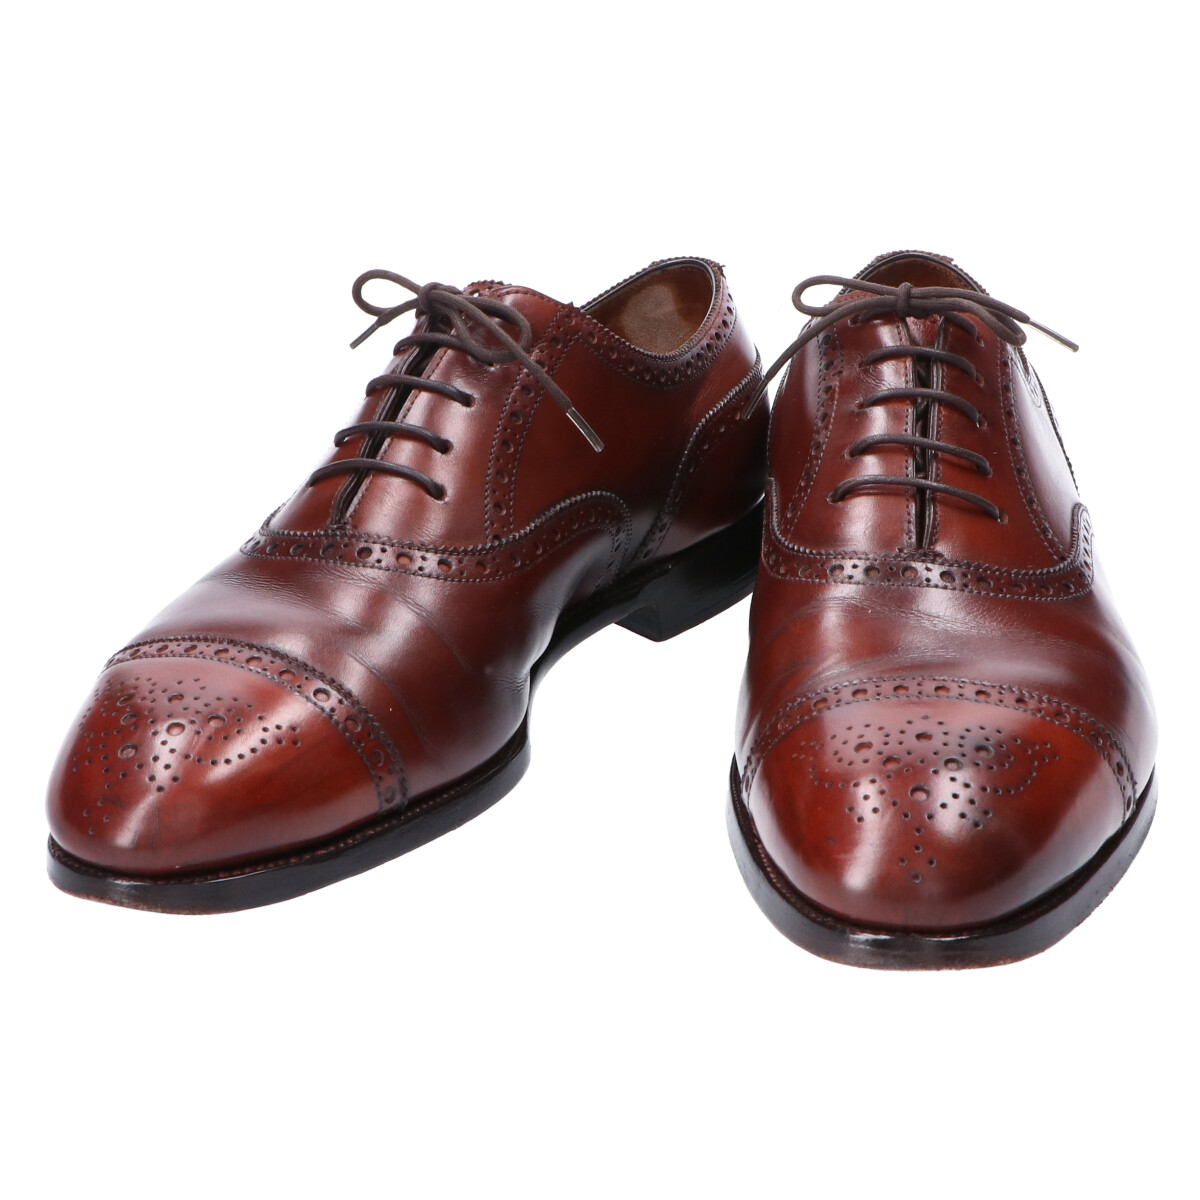 エドワードグリーンのCADOGAN/カドガン 202ラスト レザーパンチドキャップトゥシューズ/革靴の買取実績です。